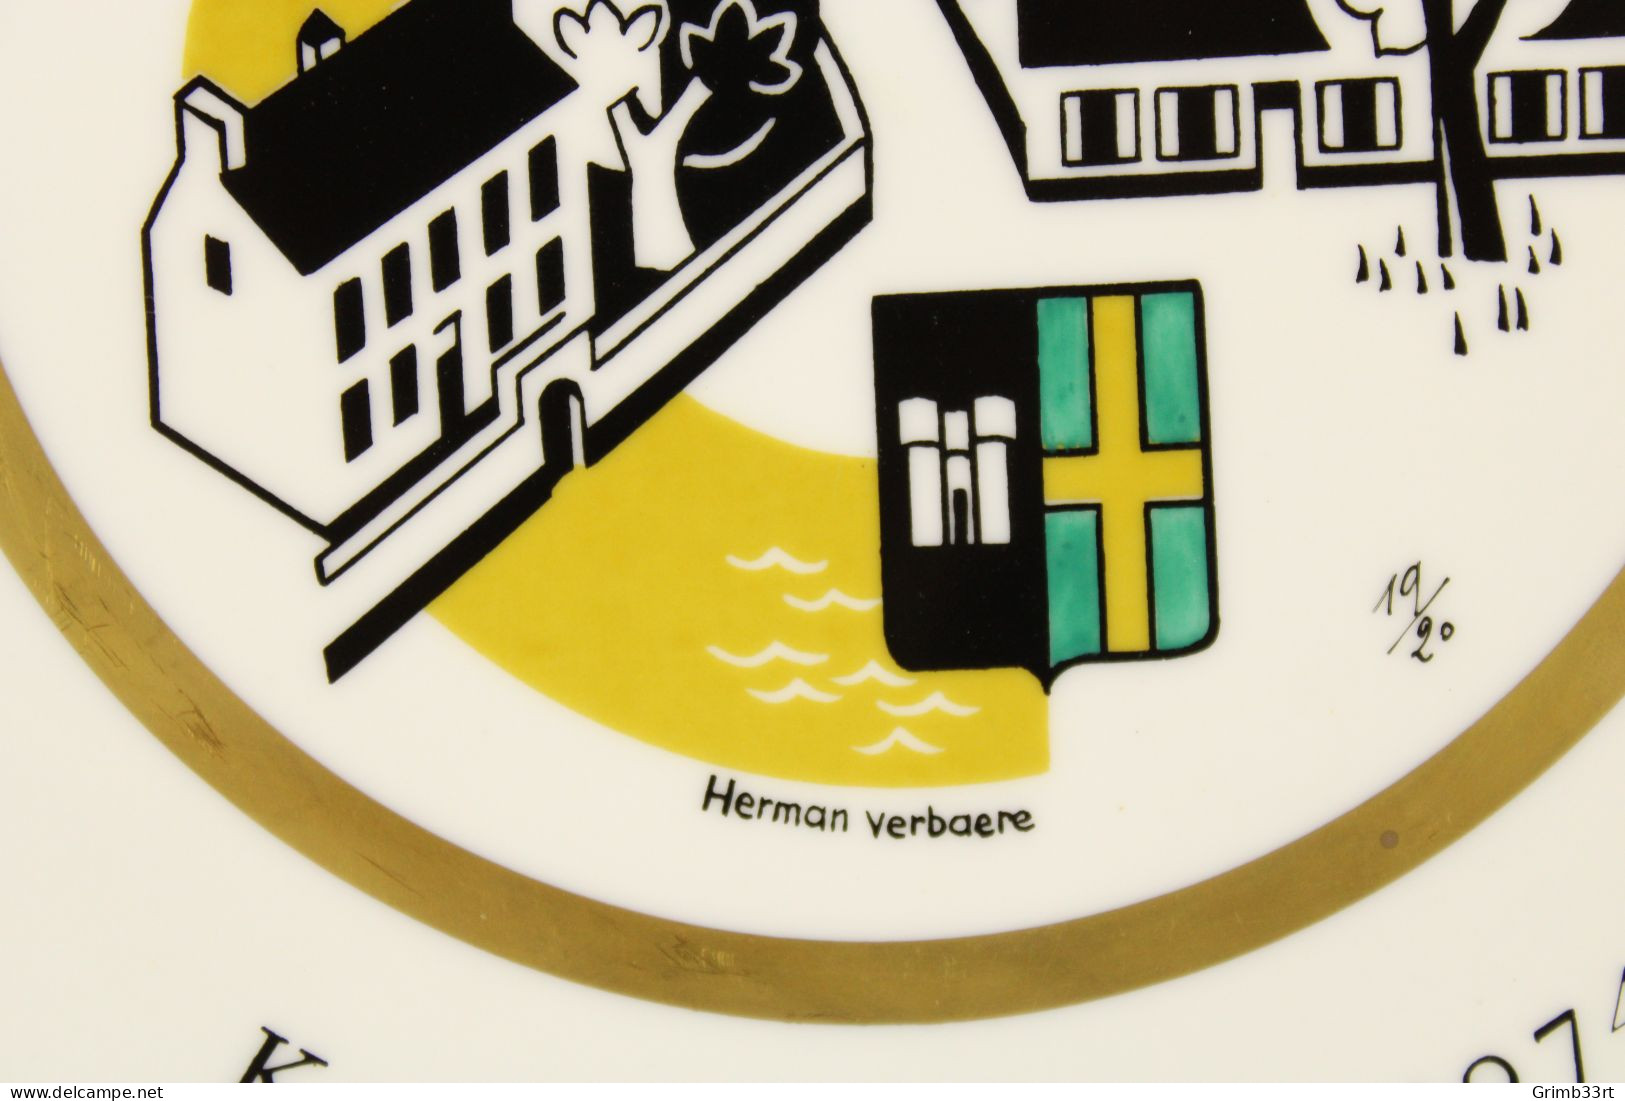 Deurle - Handbooggilde De Harlekijnen - 1974 - Herman Verbaere 19/20 - Sierbord Schuttersgilde - Boogschieten - 25.1 Cm - Tir à L'Arc